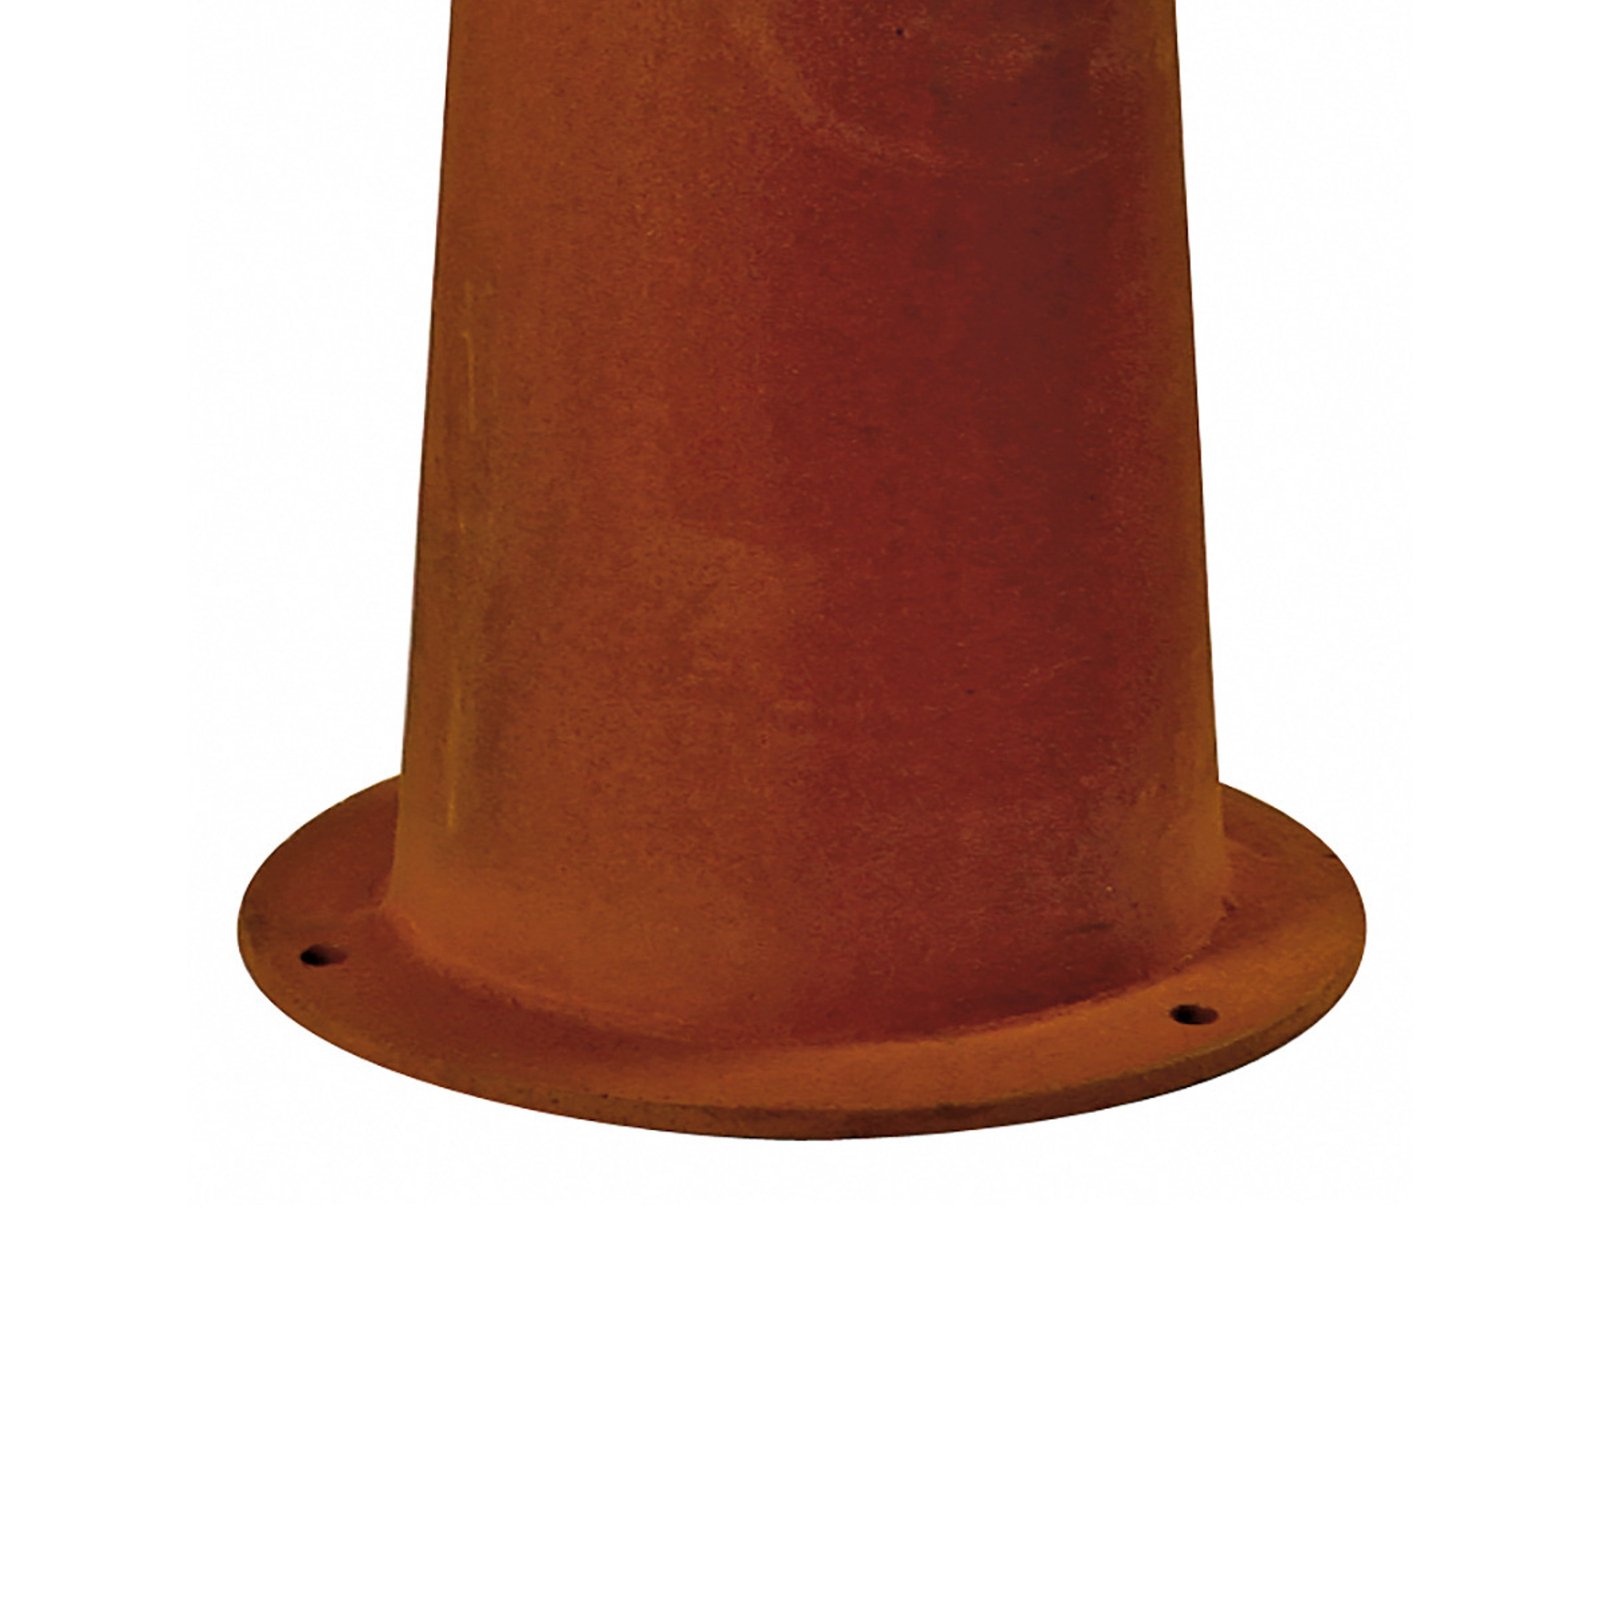 Lampa cokołowa SLV Rusty 40, kolor rdzawy, stal, wysokość 40 cm